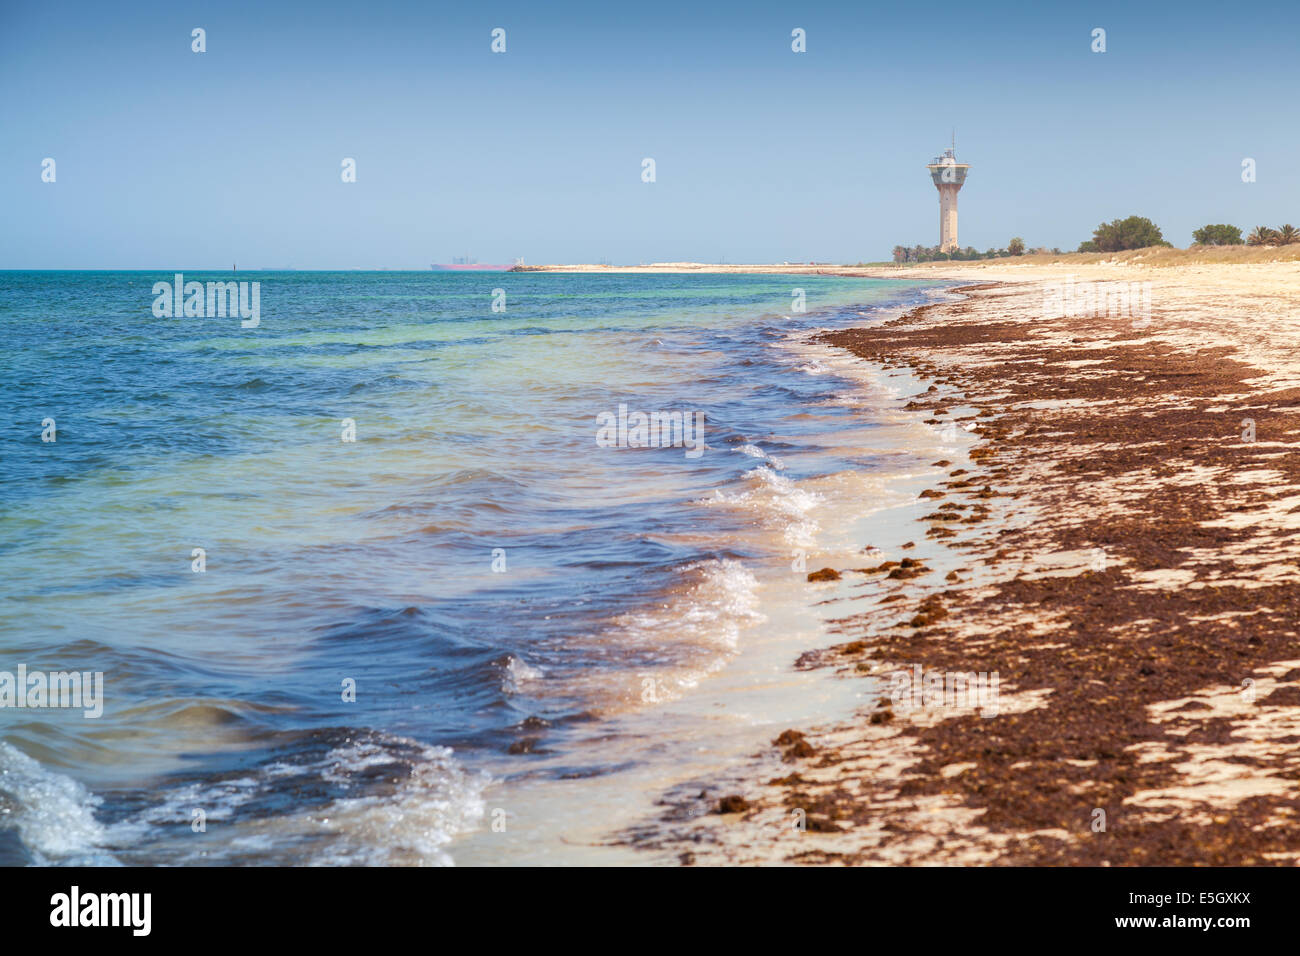 Coast of Persian Gulf in Ras Tanura, Saudi Arabia Stock Photo